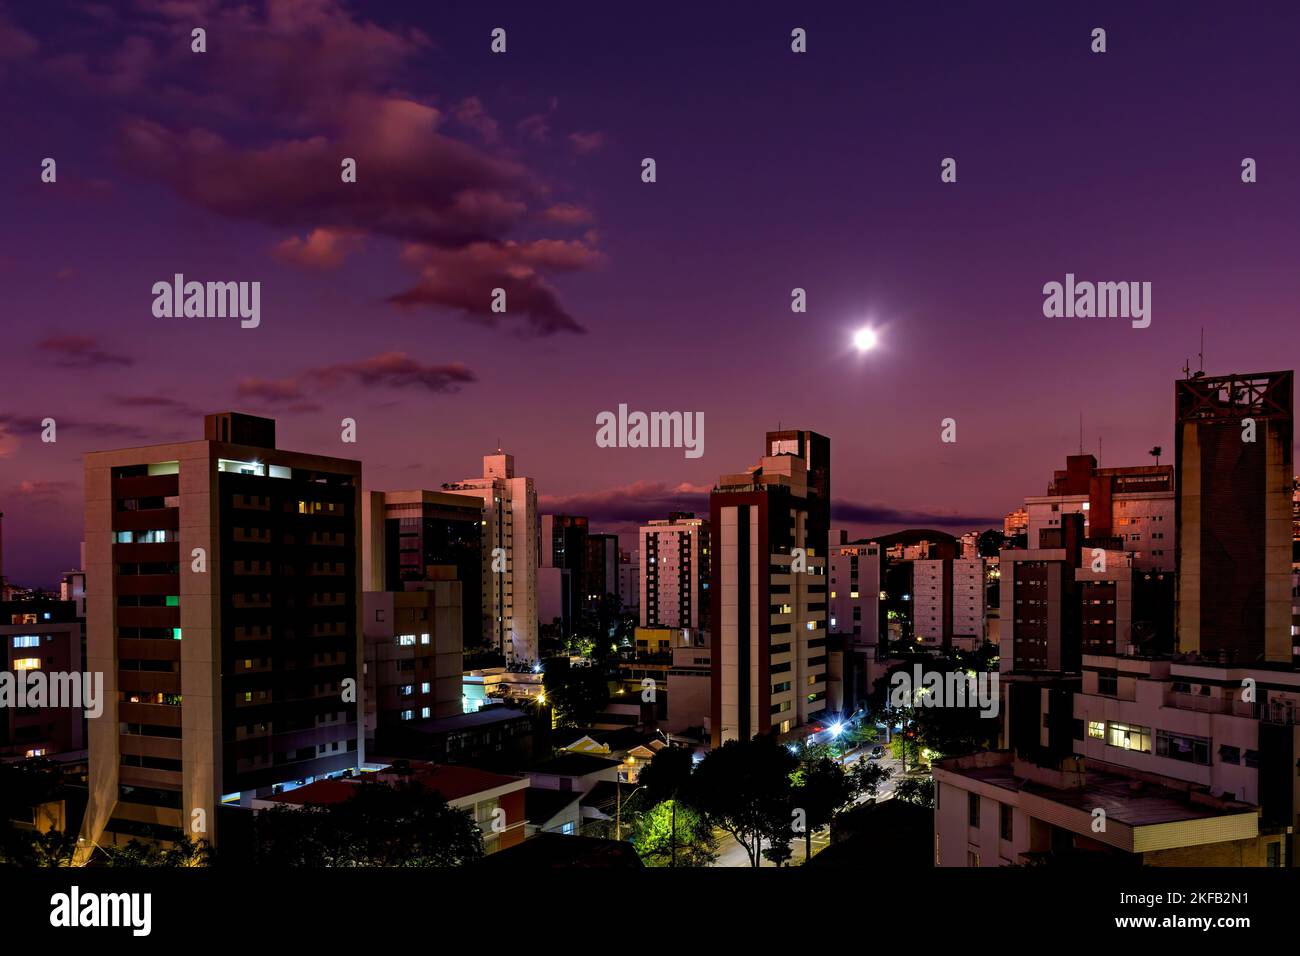 Crepuscolo nella città di Belo Horizonte, capitale dello stato di Minas Gerais, con la luna piena sopra gli edifici Foto Stock